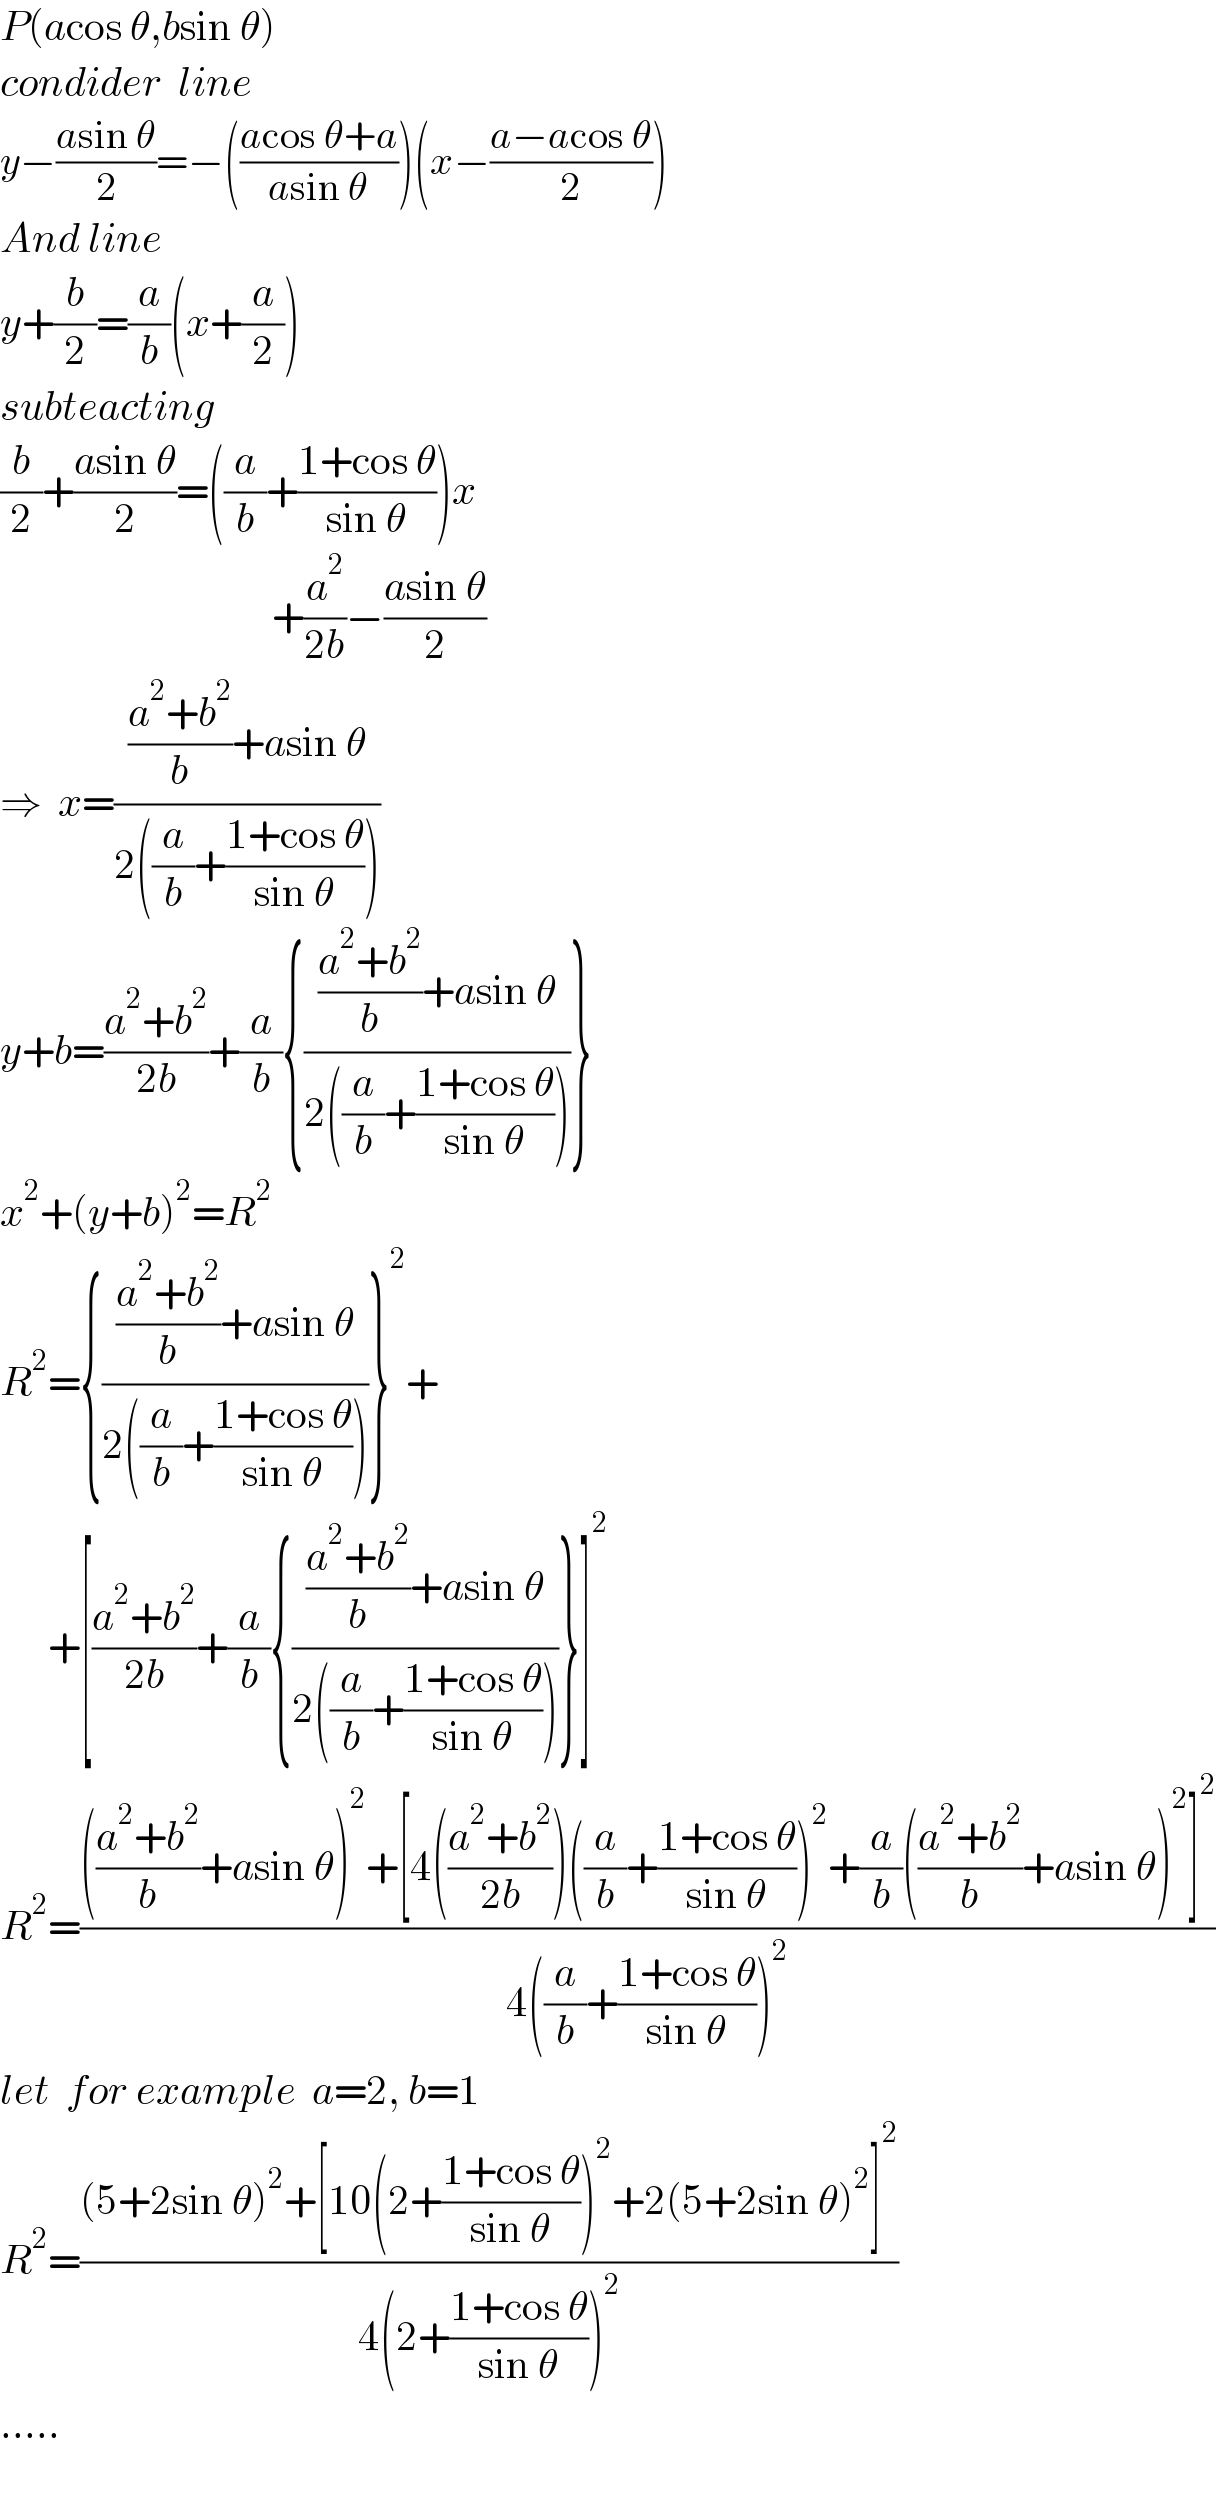 P(acos θ,bsin θ)  condider  line    y−((asin θ)/2)=−(((acos θ+a)/(asin θ)))(x−((a−acos θ)/2))  And line  y+(b/2)=(a/b)(x+(a/2))  subteacting  (b/2)+((asin θ)/2)=((a/b)+((1+cos θ)/(sin θ)))x                                    +(a^2 /(2b))−((asin θ)/2)  ⇒  x=((((a^2 +b^2 )/b)+asin θ)/(2((a/b)+((1+cos θ)/(sin θ)))))  y+b=((a^2 +b^2 )/(2b))+(a/b){((((a^2 +b^2 )/b)+asin θ)/(2((a/b)+((1+cos θ)/(sin θ)))))}  x^2 +(y+b)^2 =R^2   R^2 ={((((a^2 +b^2 )/b)+asin θ)/(2((a/b)+((1+cos θ)/(sin θ)))))}^2 +        +[((a^2 +b^2 )/(2b))+(a/b){((((a^2 +b^2 )/b)+asin θ)/(2((a/b)+((1+cos θ)/(sin θ)))))}]^2   R^2 =(((((a^2 +b^2 )/b)+asin θ)^2 +[4(((a^2 +b^2 )/(2b)))((a/b)+((1+cos θ)/(sin θ)))^2 +(a/b)(((a^2 +b^2 )/b)+asin θ)^2 ]^2 )/(4((a/b)+((1+cos θ)/(sin θ)))^2 ))  let  for example  a=2, b=1  R^2 =(((5+2sin θ)^2 +[10(2+((1+cos θ)/(sin θ)))^2 +2(5+2sin θ)^2 ]^2 )/(4(2+((1+cos θ)/(sin θ)))^2 ))  .....    